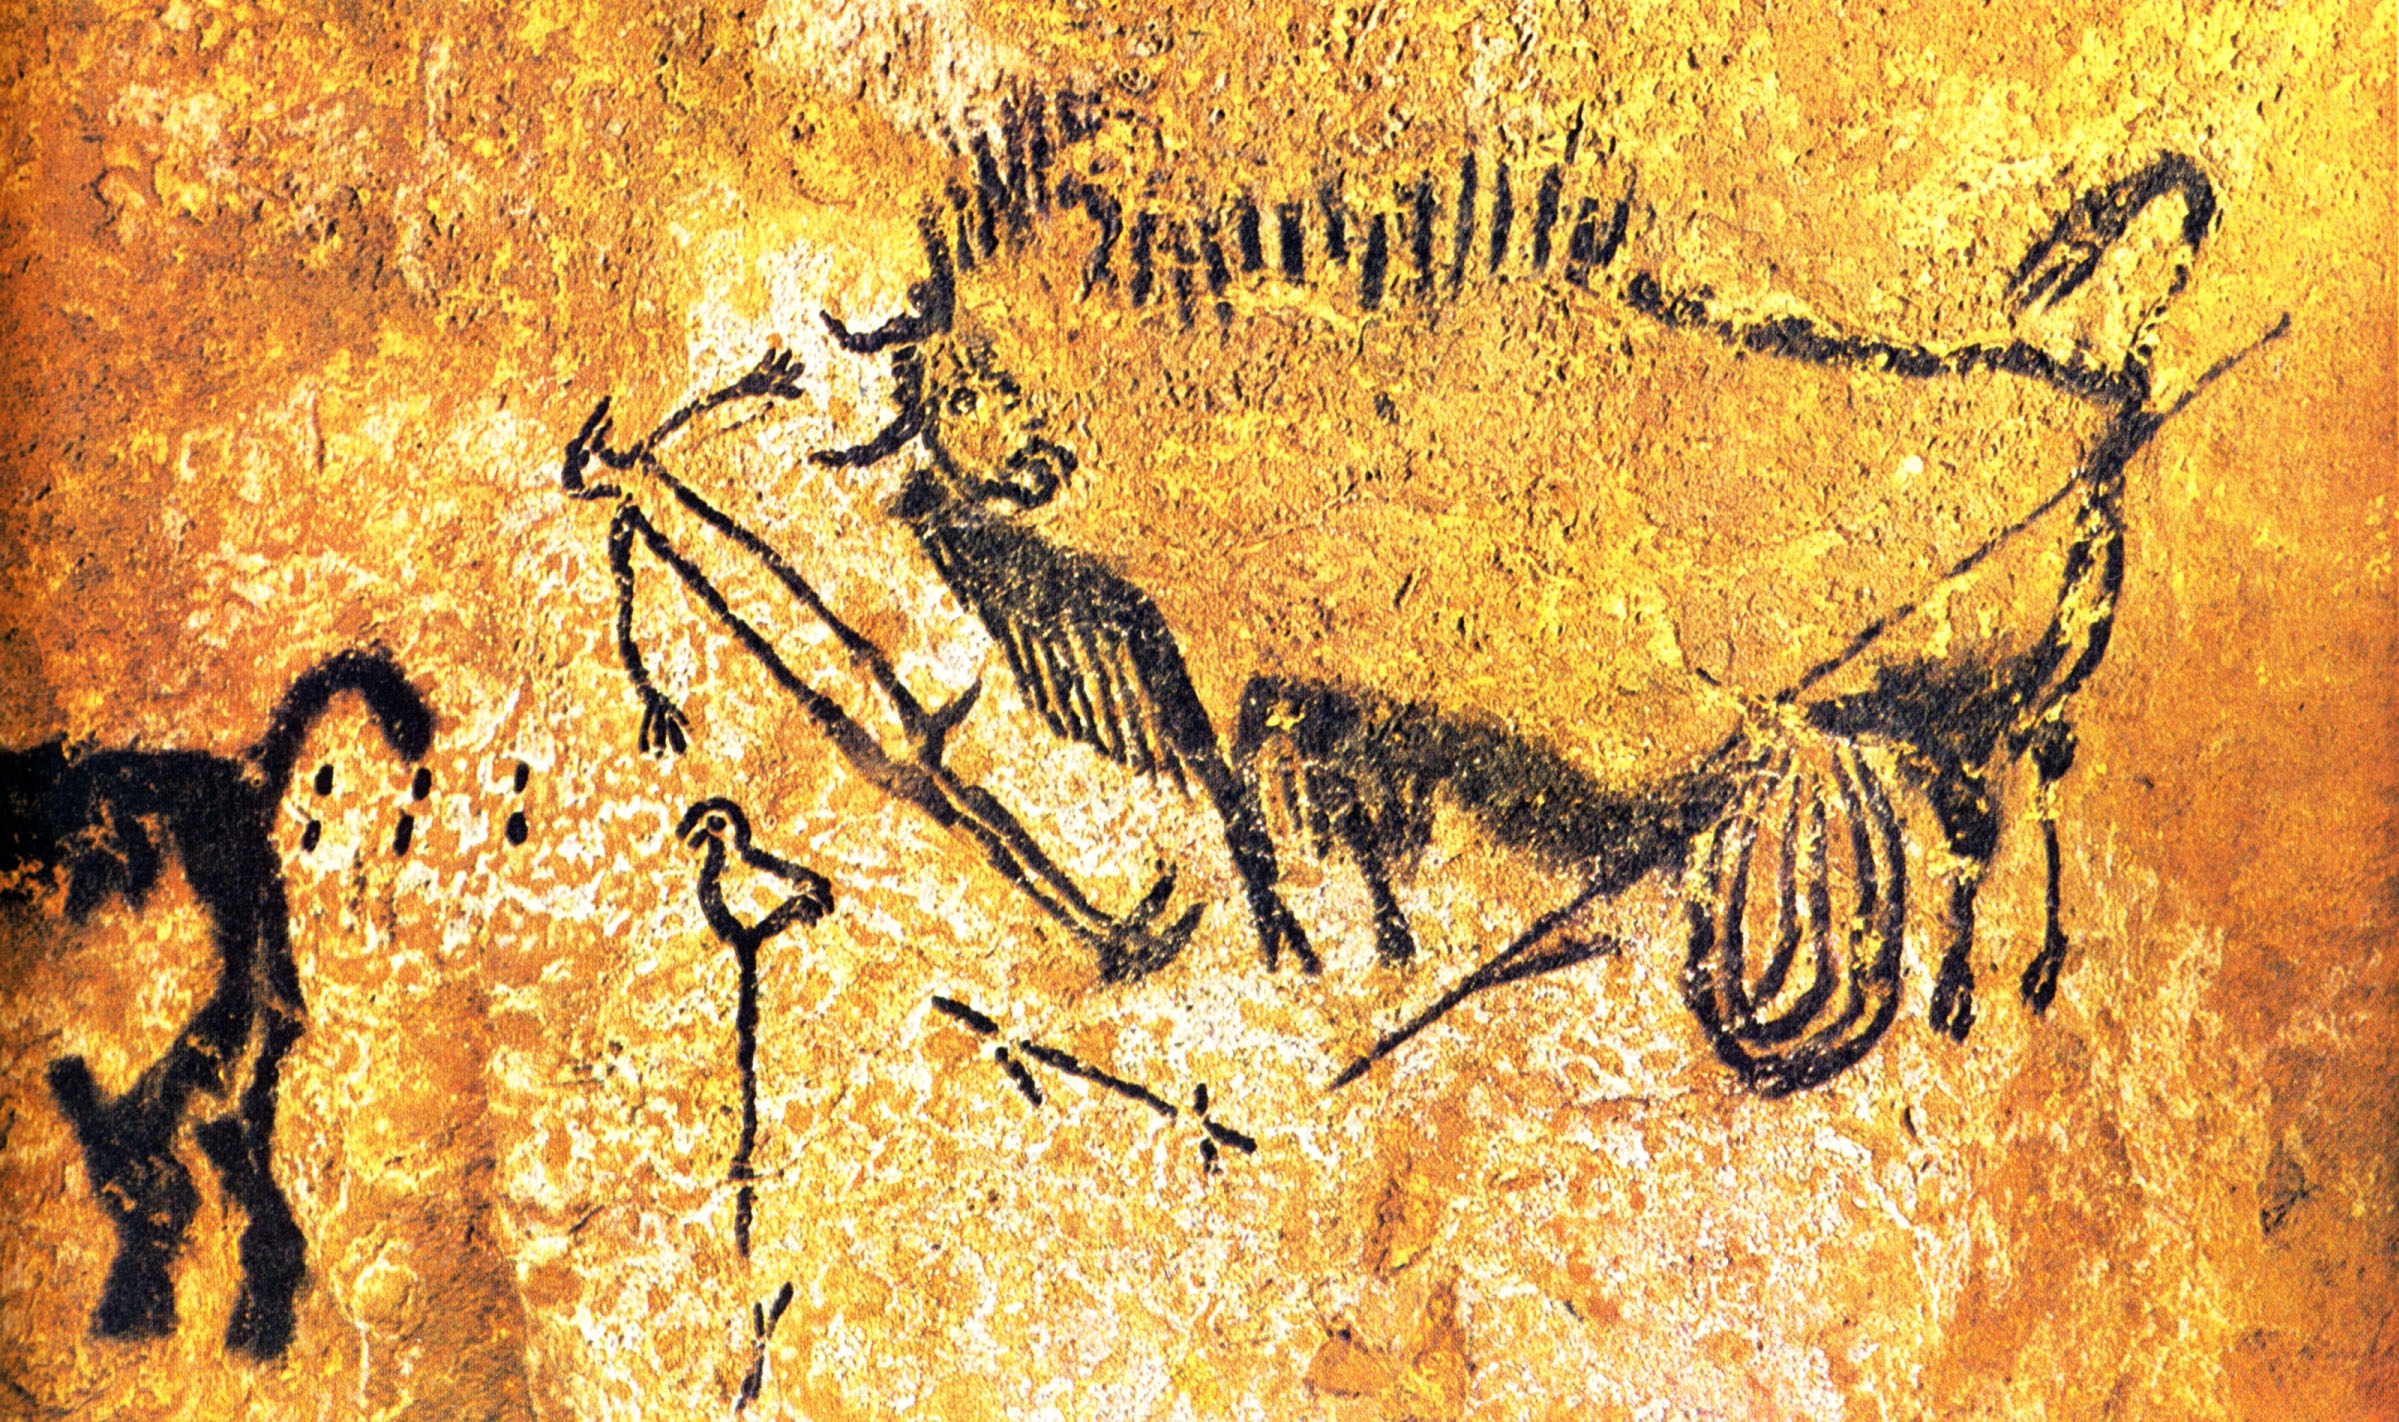 Первобытное изображение человека. Лошадь пещера Ласко Франция Наскальная живопись палеолита. Пещера Ласко Бизон. Первобытное искусство пещера Ласко. Пещера Ласко сцена охоты.